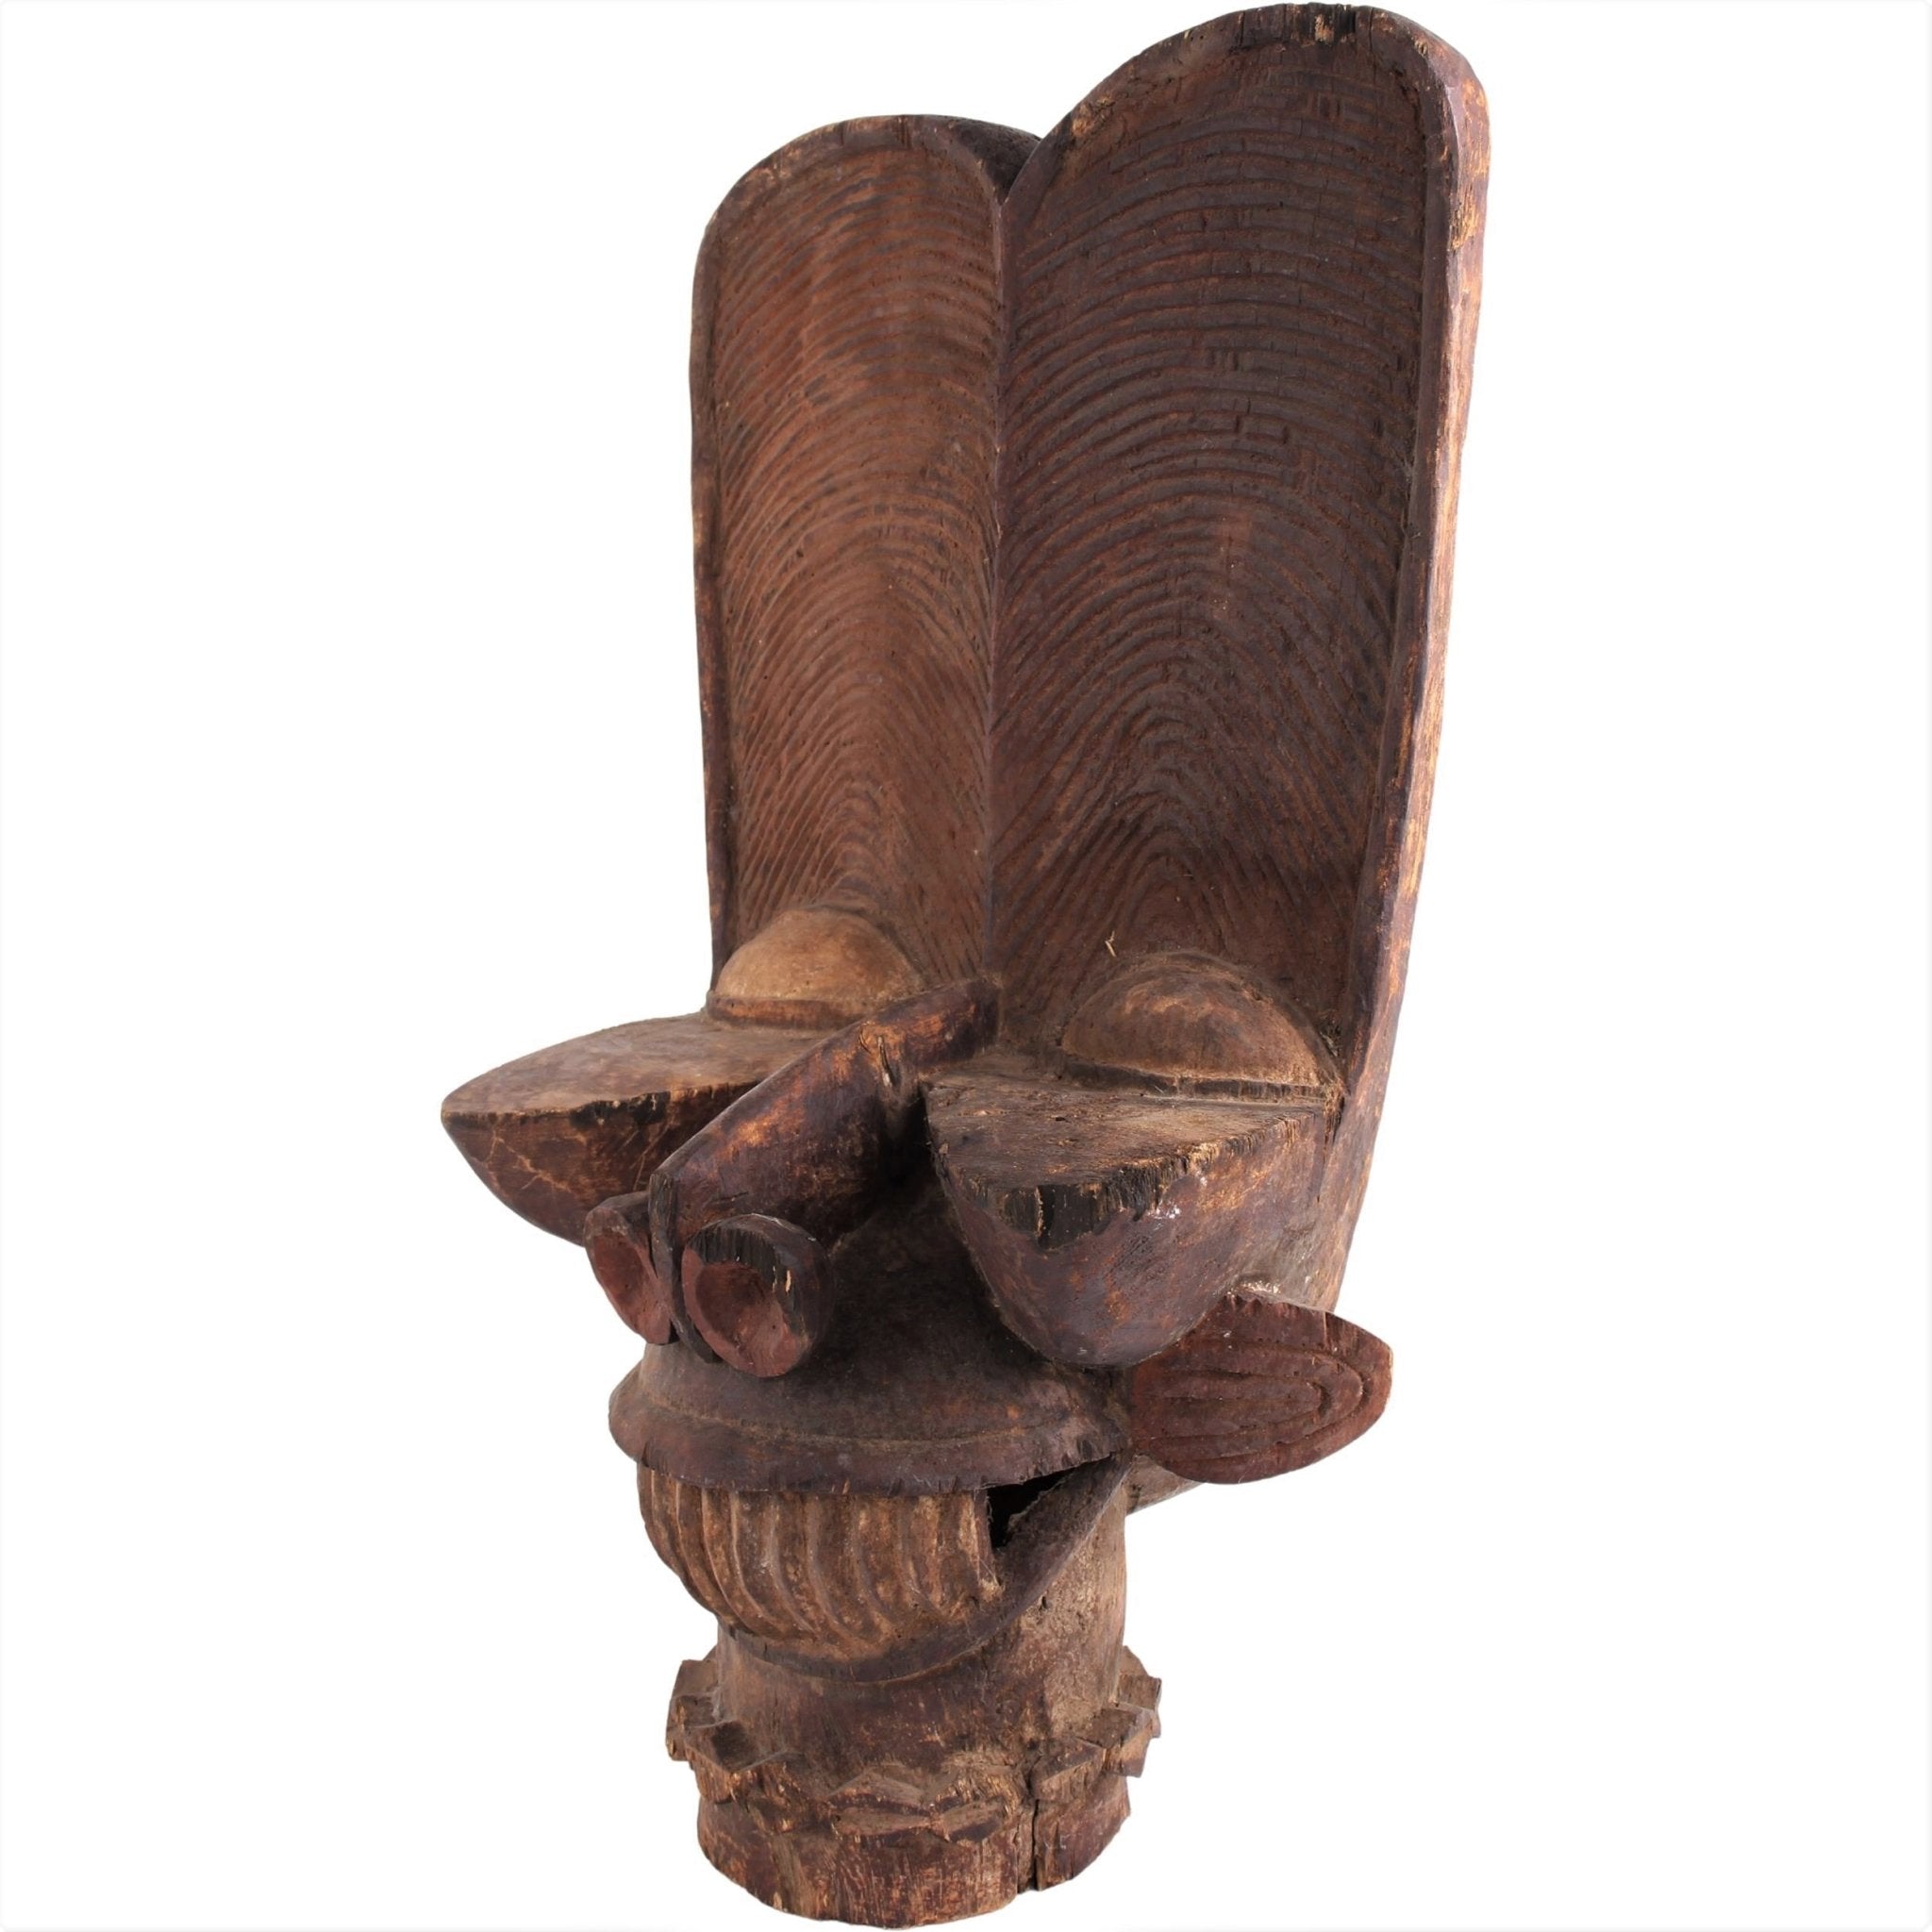 Bamileke Tribe Mask ~32.3" Tall - African Angel Art - Bamileke